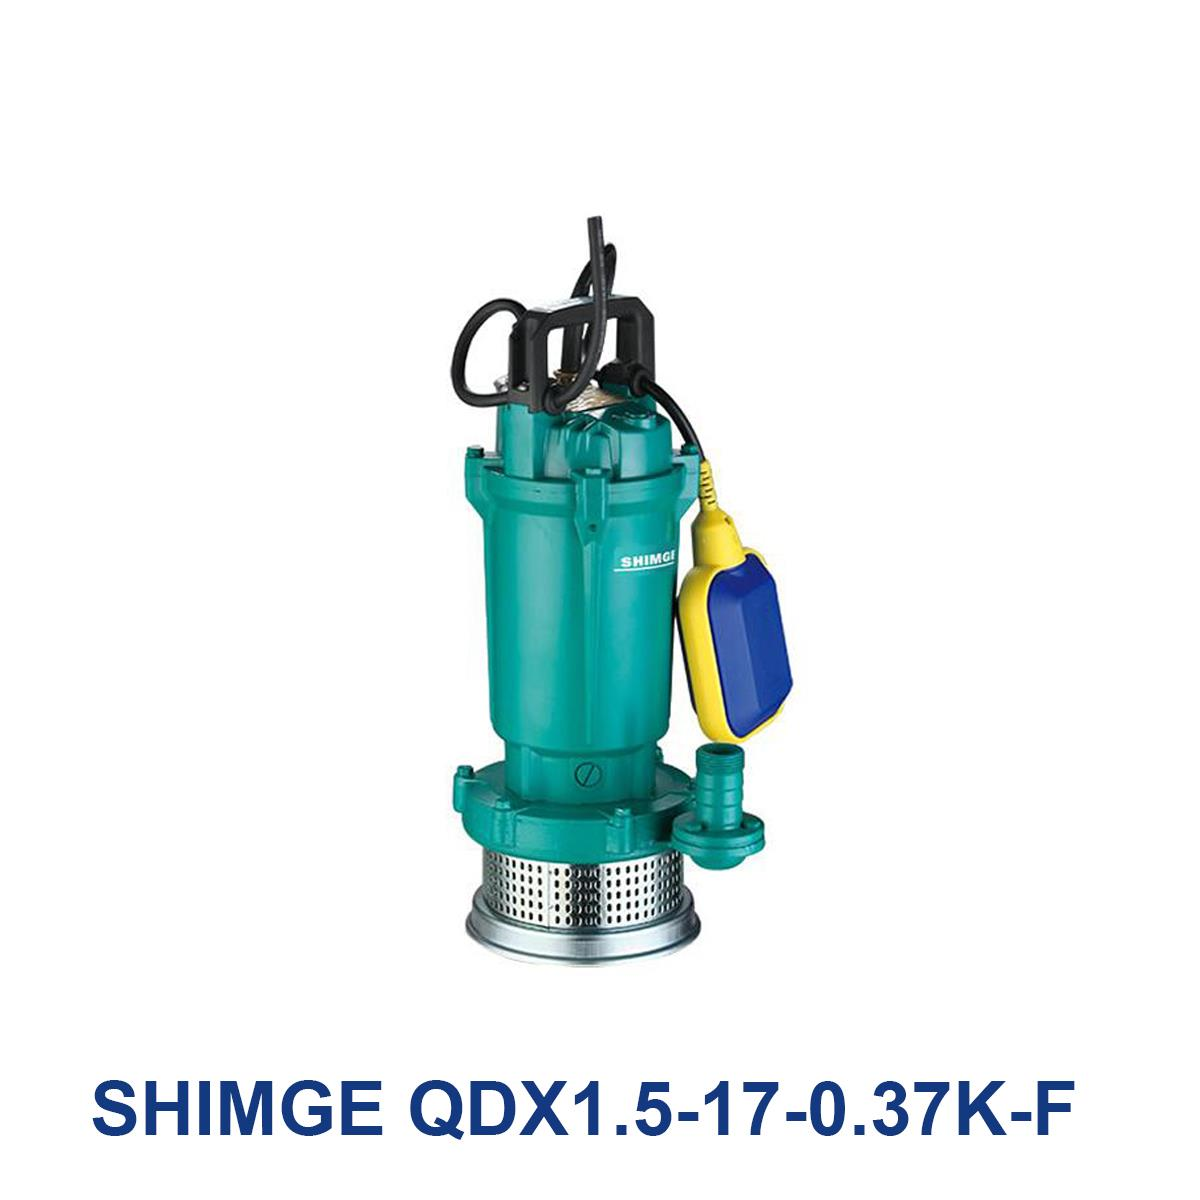 SHIMGE-QDX1.5-17-0.37K-F